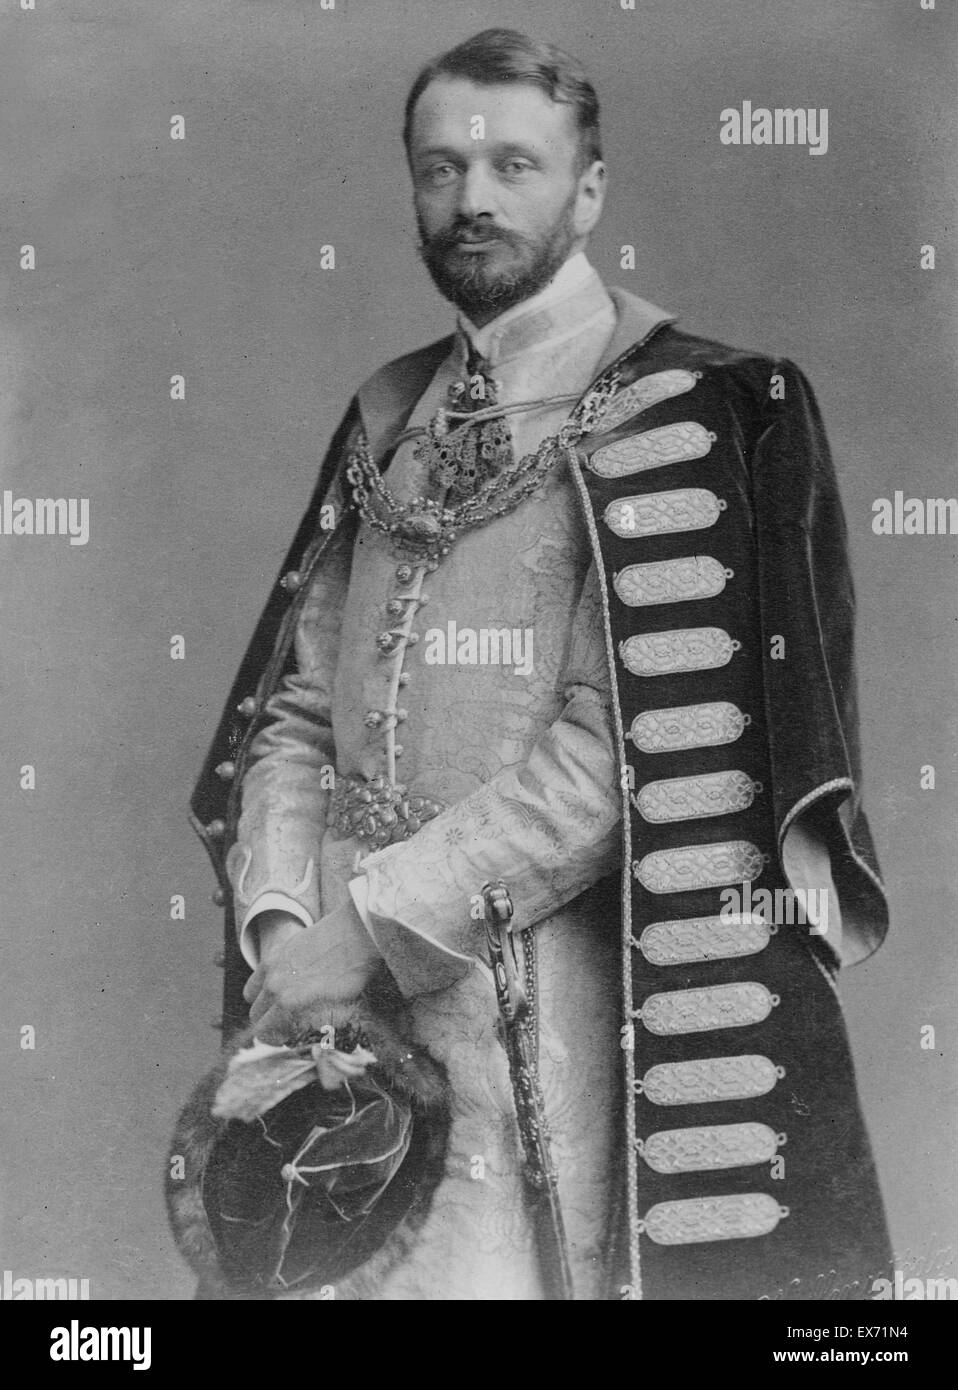 Comte Gyula Andrássy (8 mars 1823 - 18 février 1890) était un homme d'État hongrois, qui a servi comme Premier Ministre de Hongrie (1867-1871) et par la suite en tant que Ministre des affaires étrangères de l'Autriche-Hongrie (1871-1879). Banque D'Images